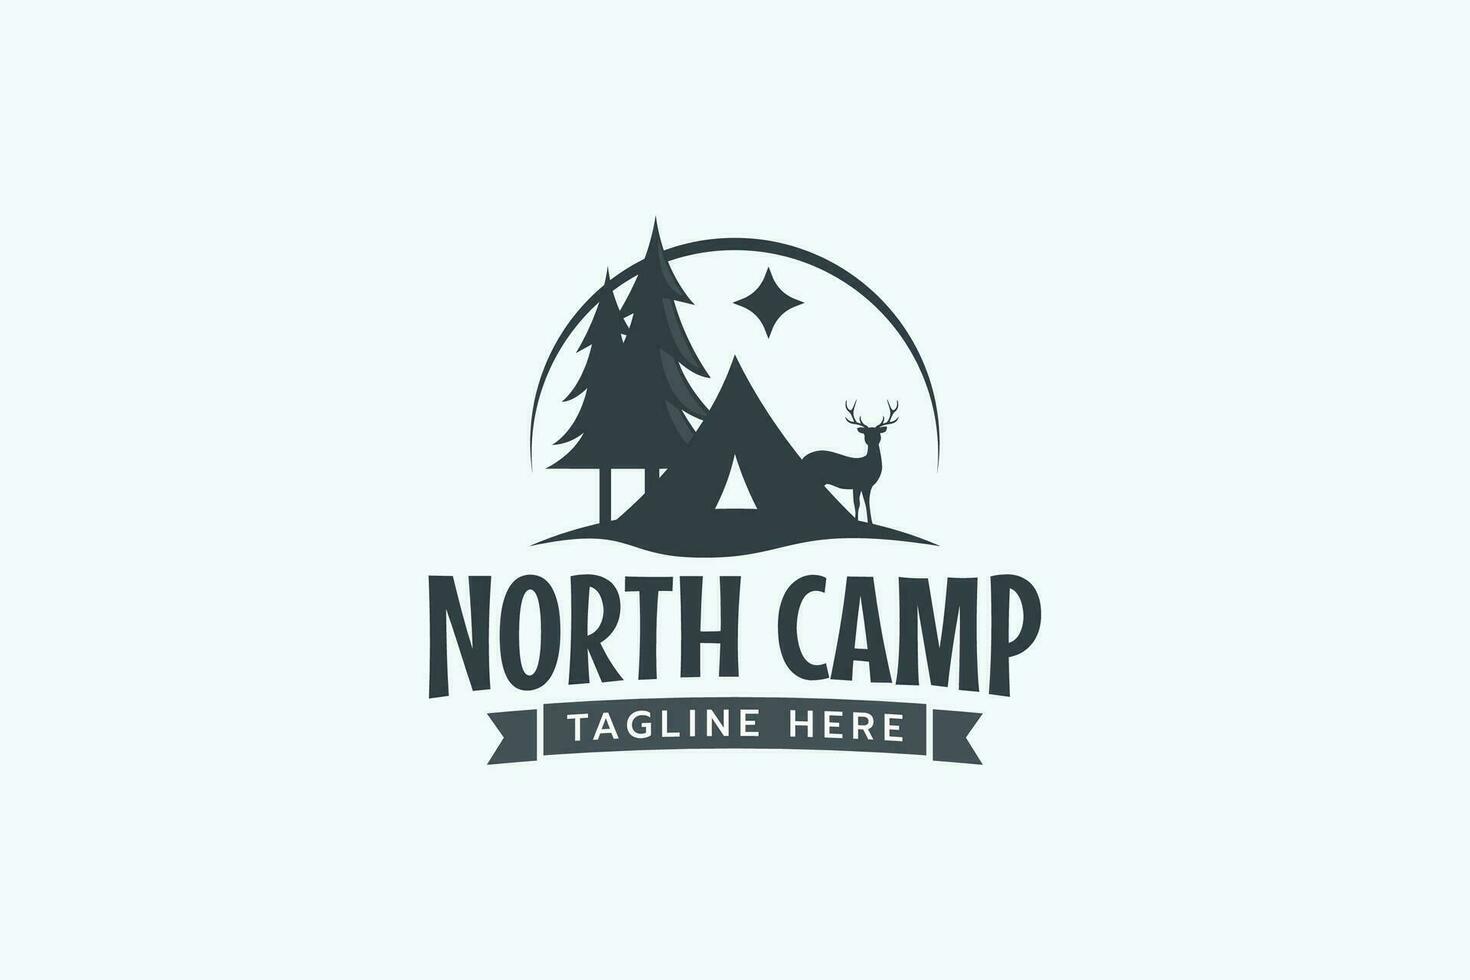 le Nord camp logo avec une combinaison de une tente, pins, cerf, et le Nord étoile pour tout entreprise. vecteur